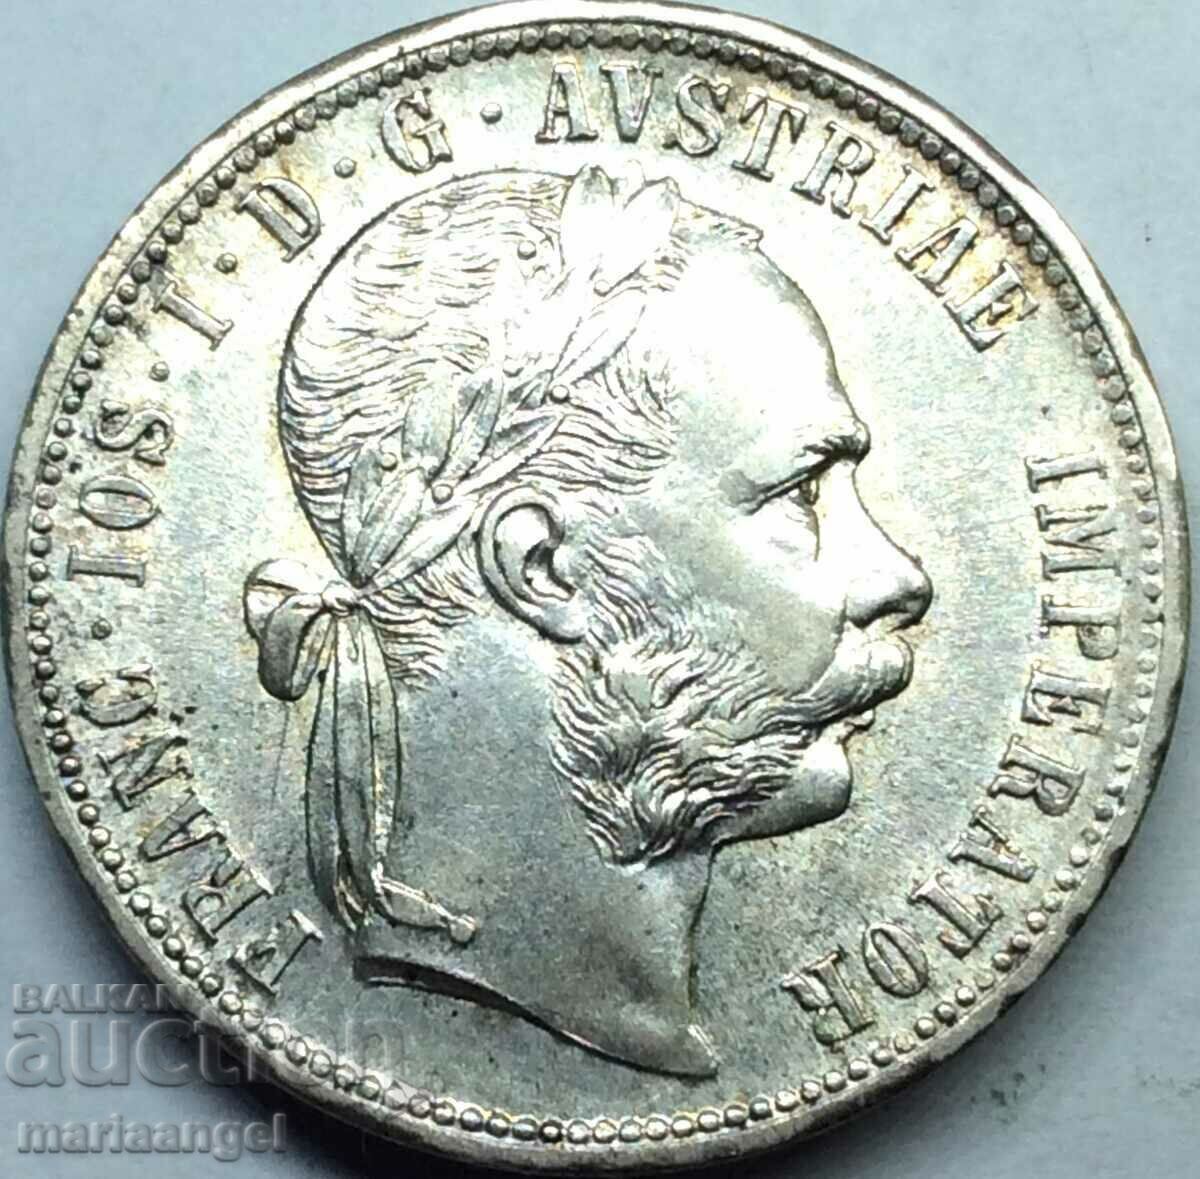 Австрия 1 флорин 1877 Франц Йозеф I  сребро